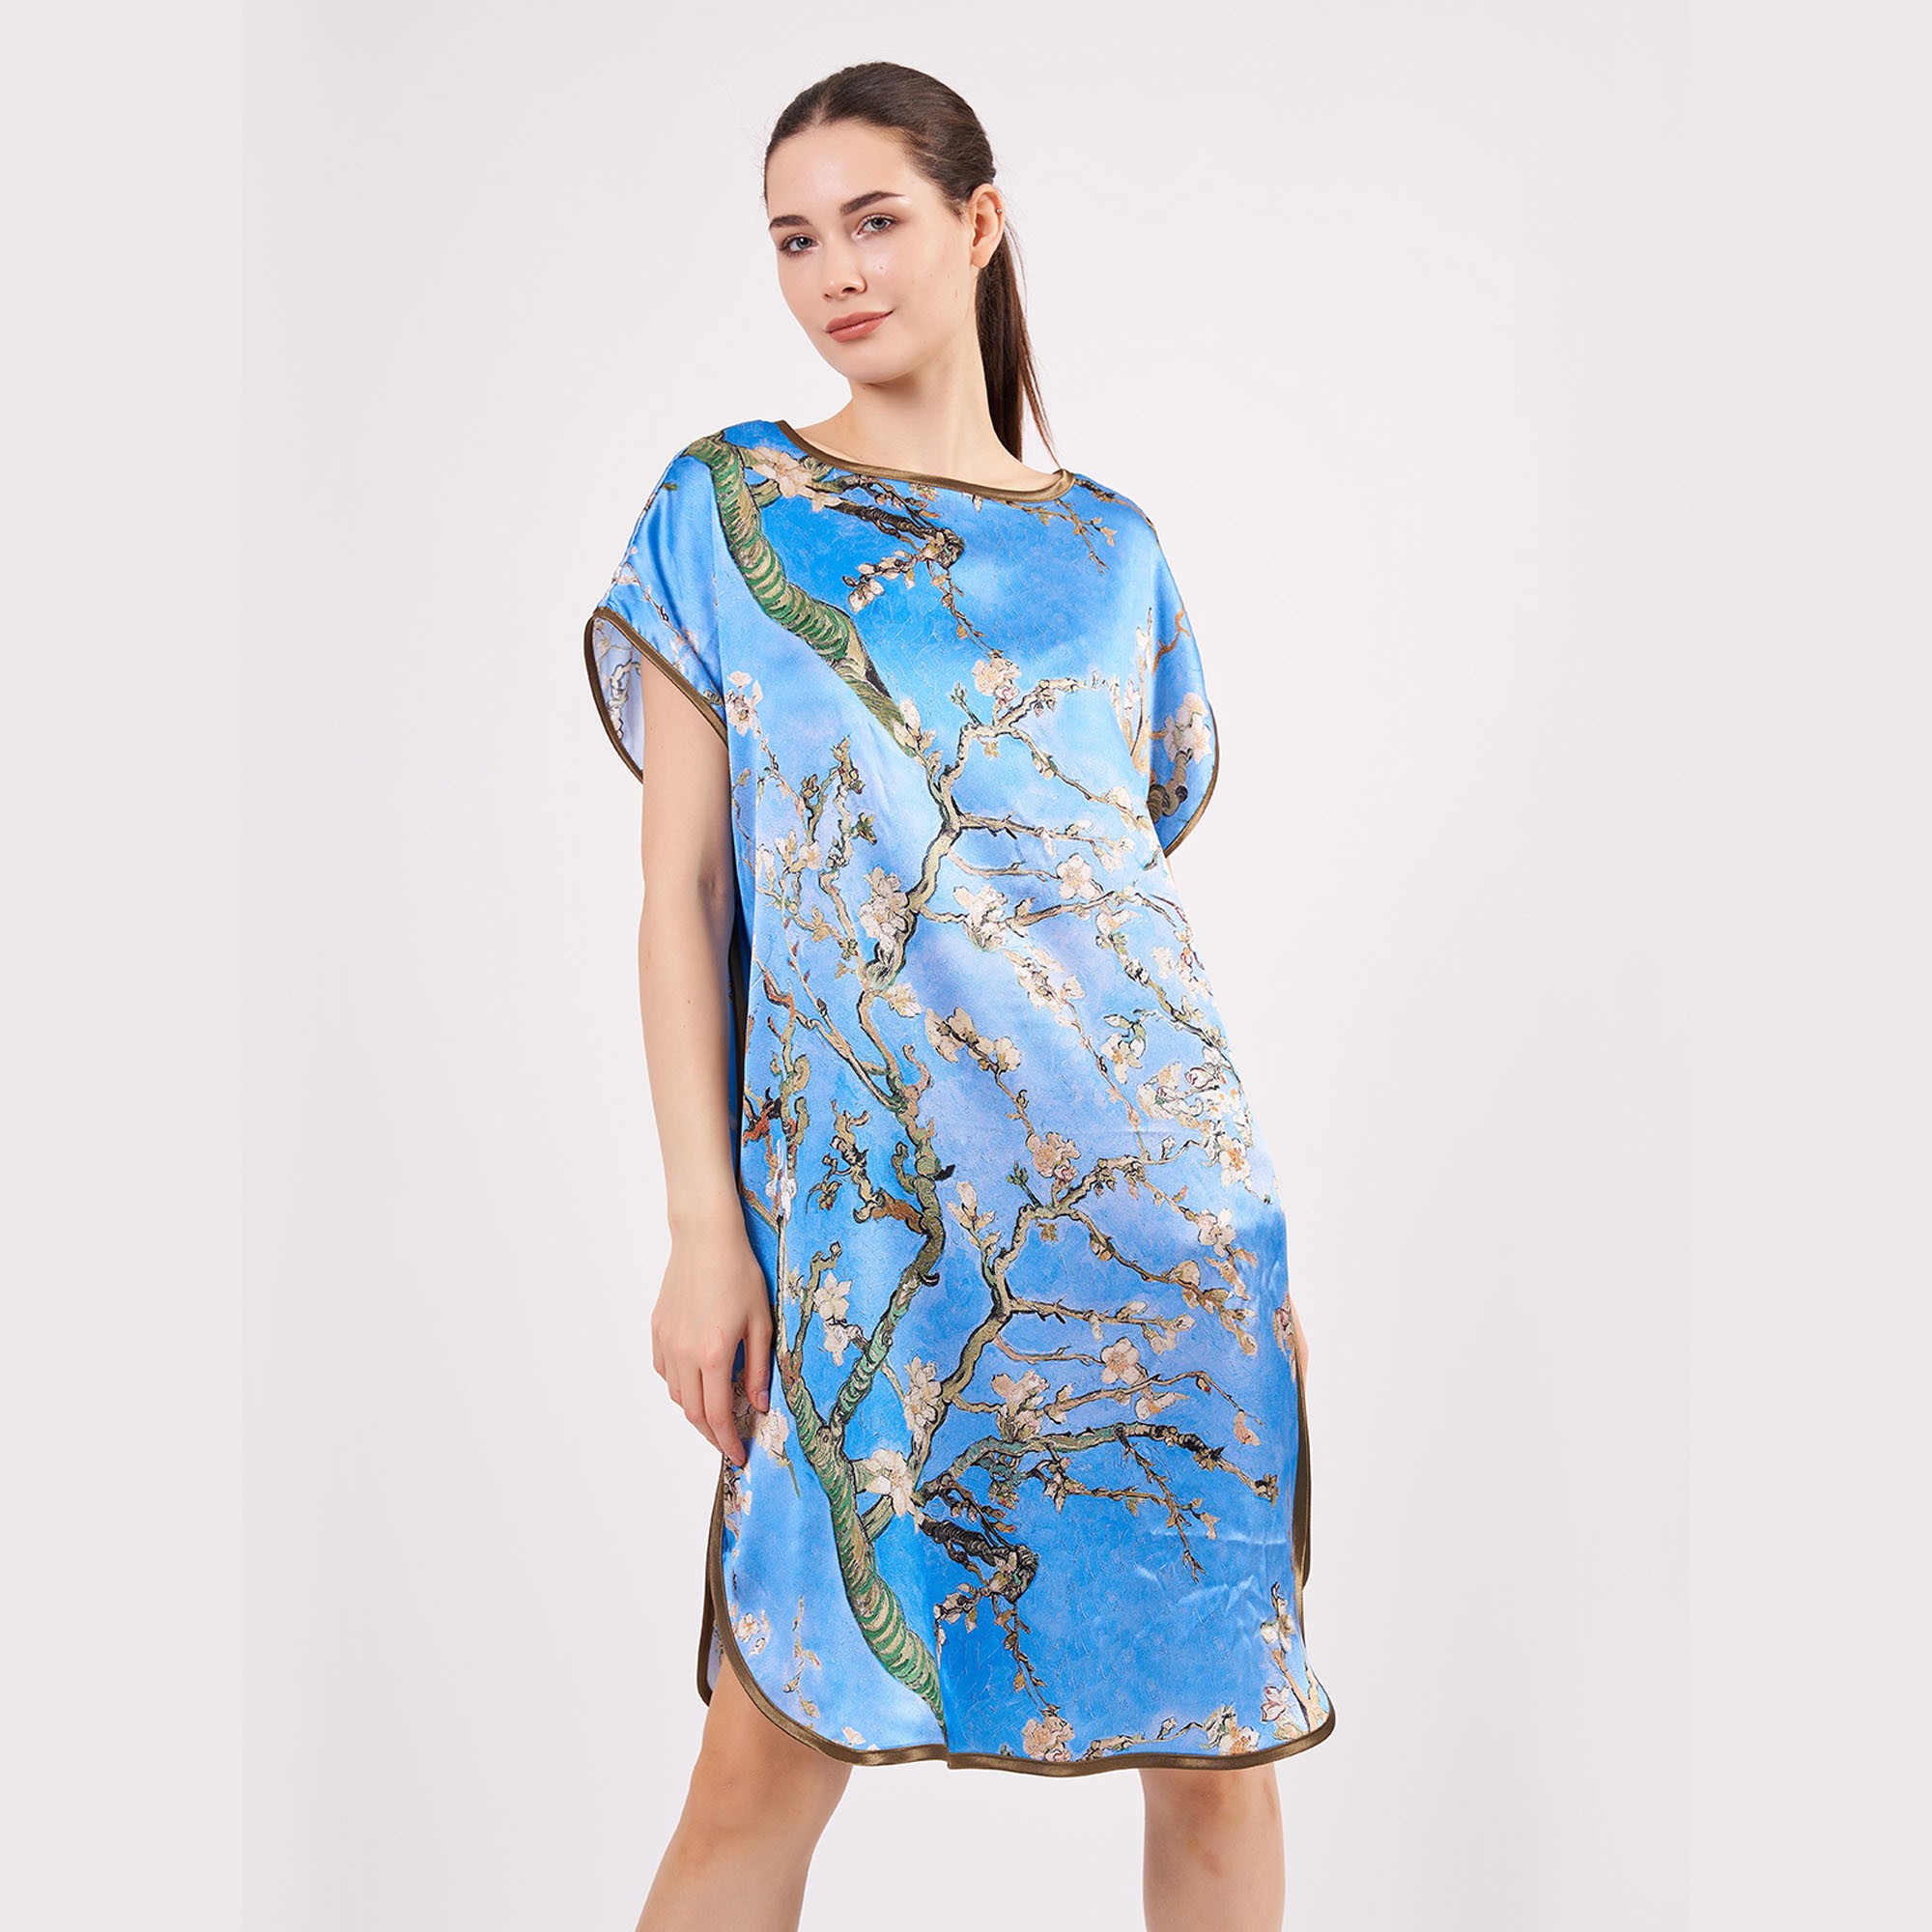 فستان حرير قصير ١٠٠٪ بزخرفة فان جوخ شجرة اللوز ، لون الازرق